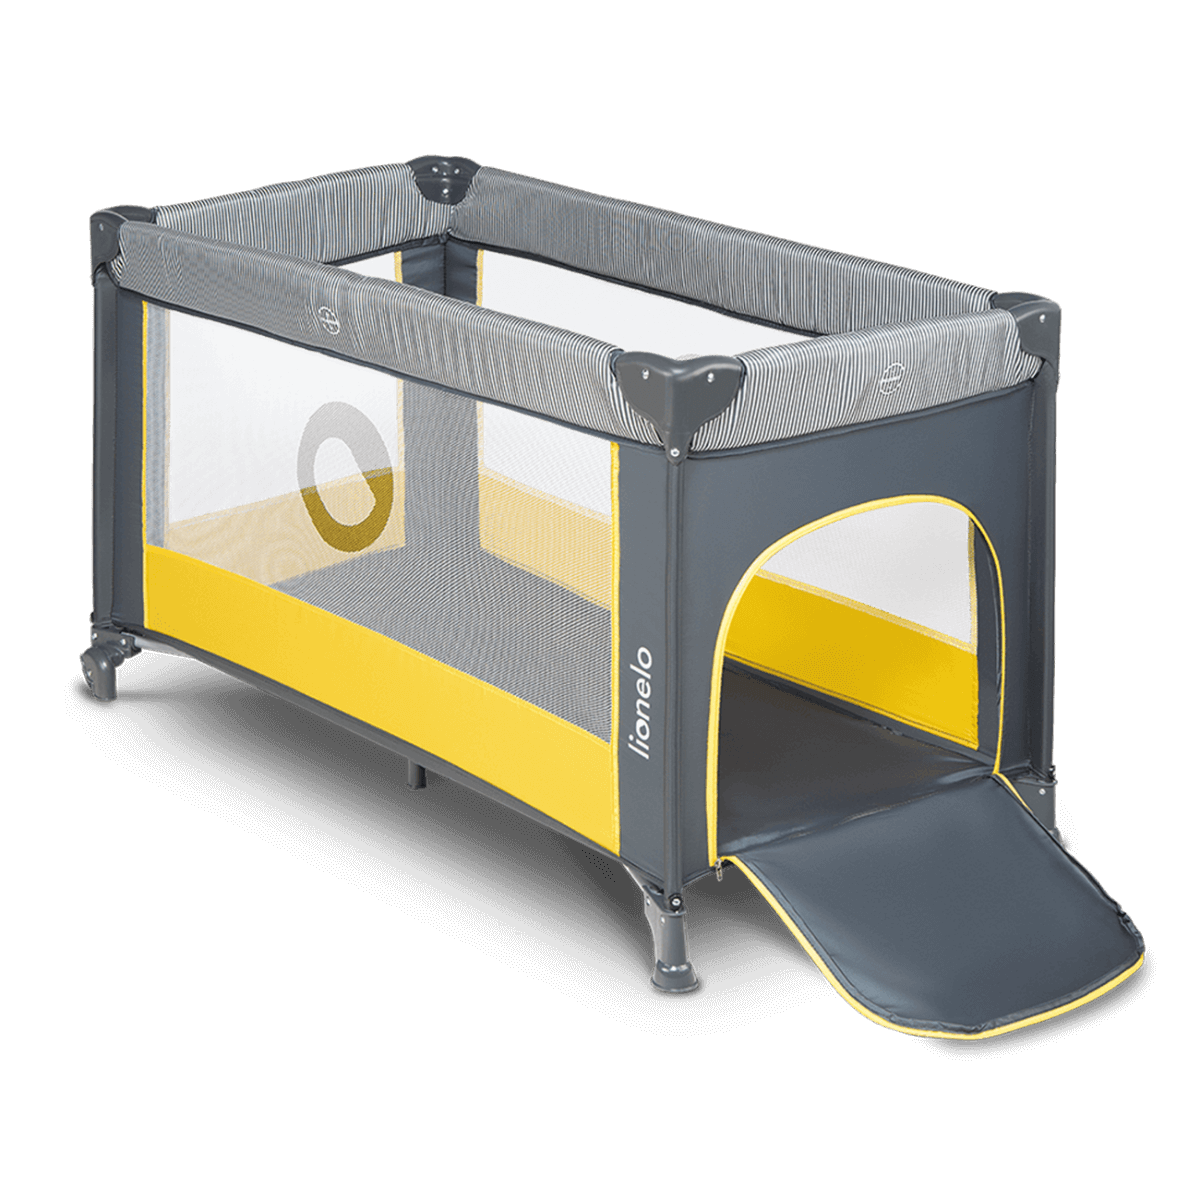 Lit bébé 2 en 1 Stefi Lionelo - Cribs & Toddler Beds par Lionelo